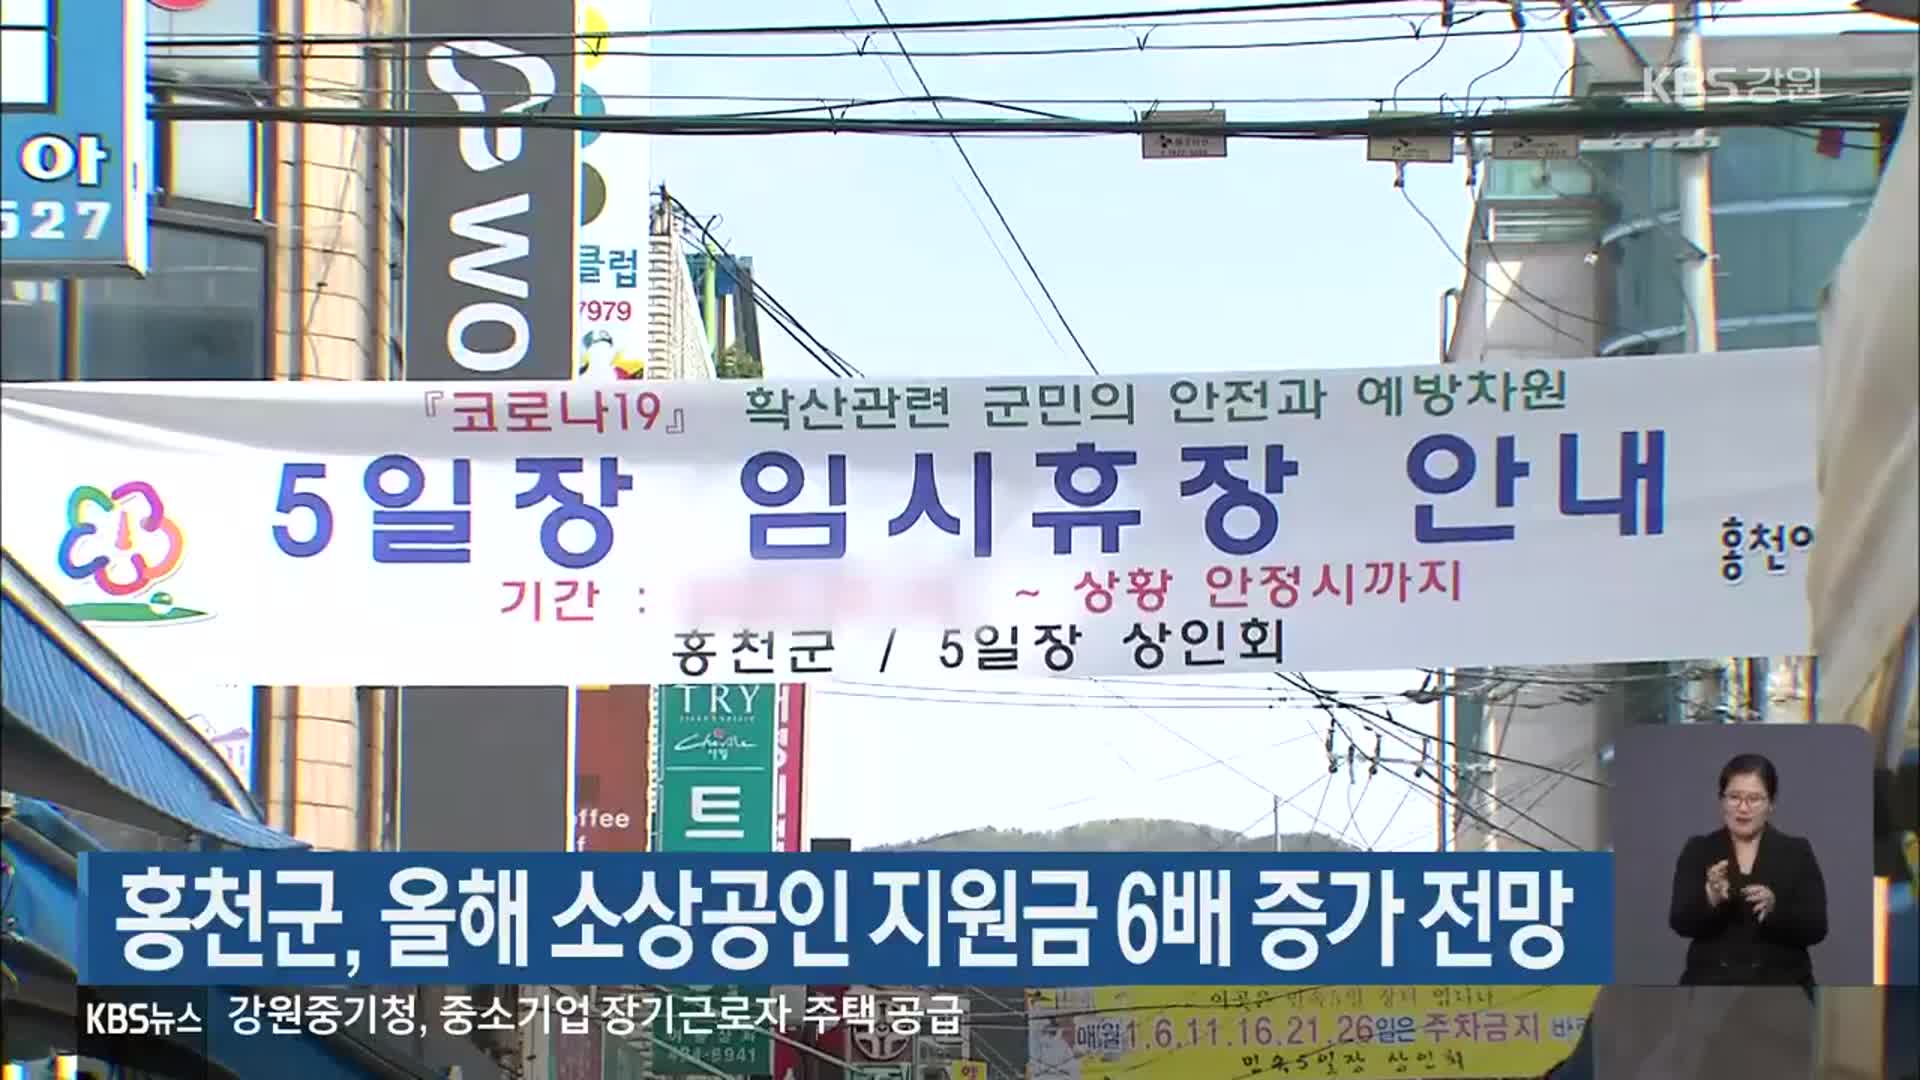 홍천군, 올해 소상공인 지원금 6배 증가 전망